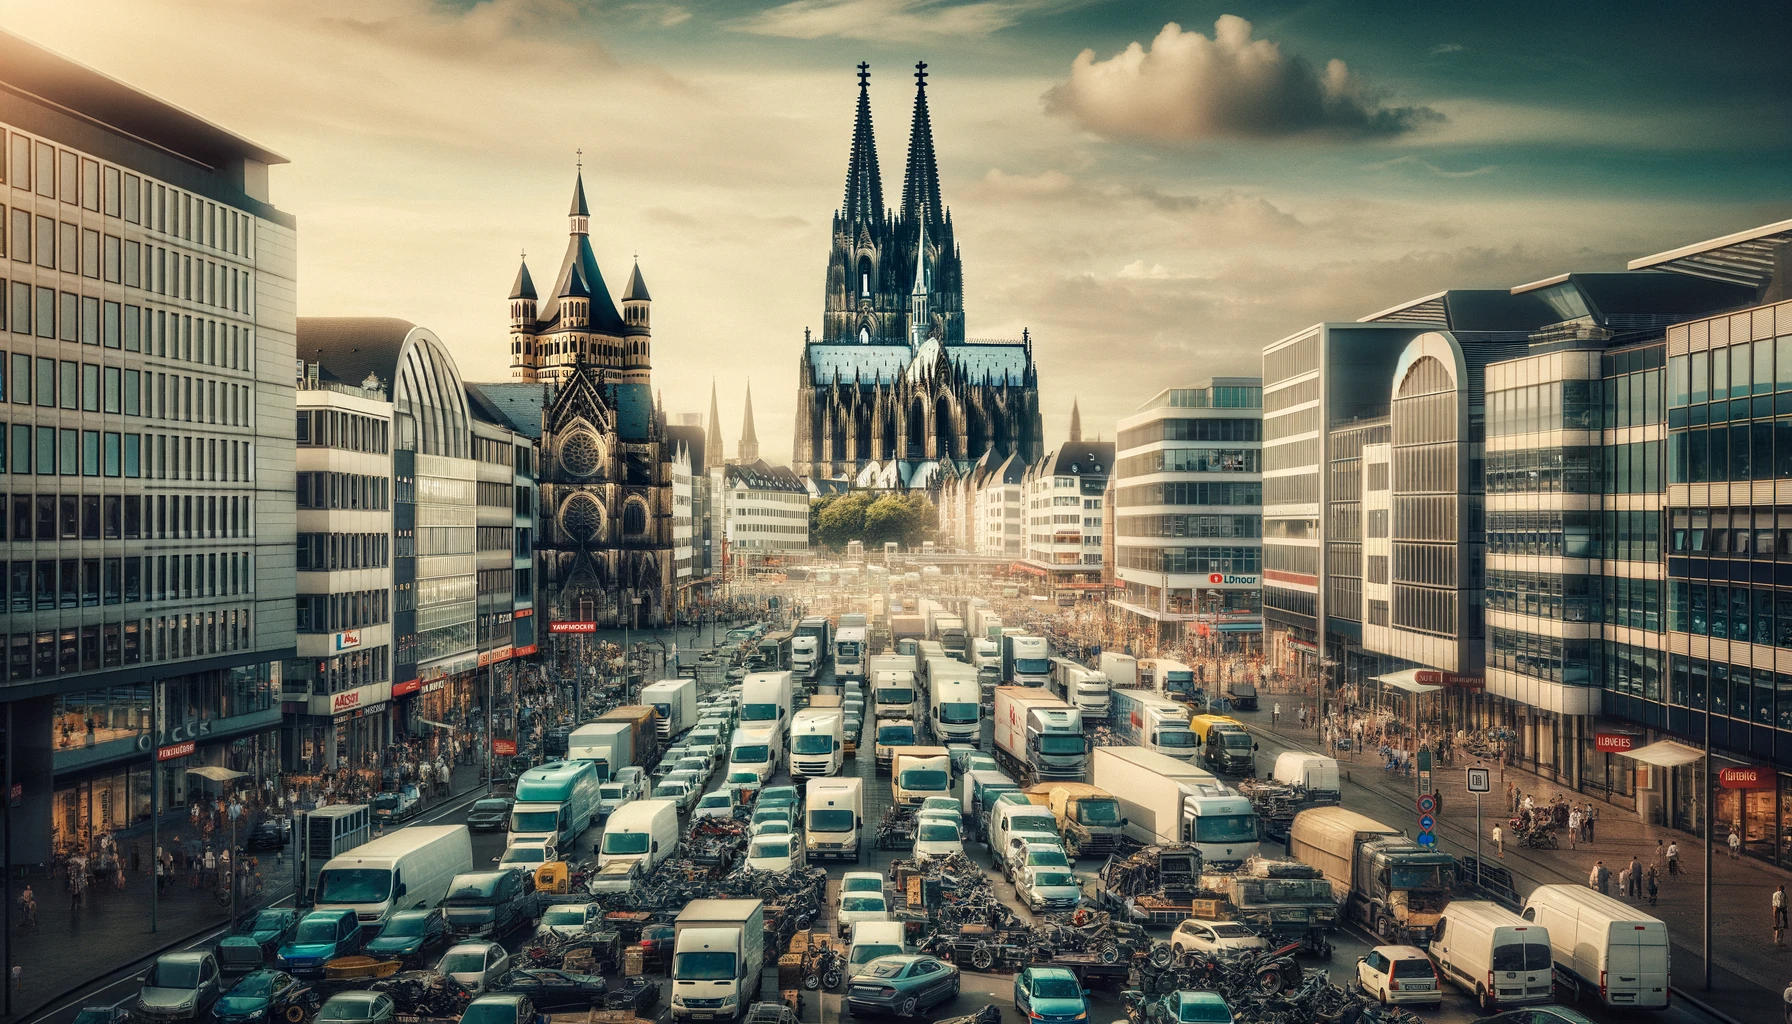 Stadtbild von Köln mit dem Kölner Dom im Hintergrund und einer Vielfalt an Fahrzeugen, darunter einige mit sichtbaren Motorschäden, auf einer belebten Straße. Die Szene vermittelt eine geschäftige Atmosphäre, die für eine Stadt mit blühendem Automobilhandel typisch ist.